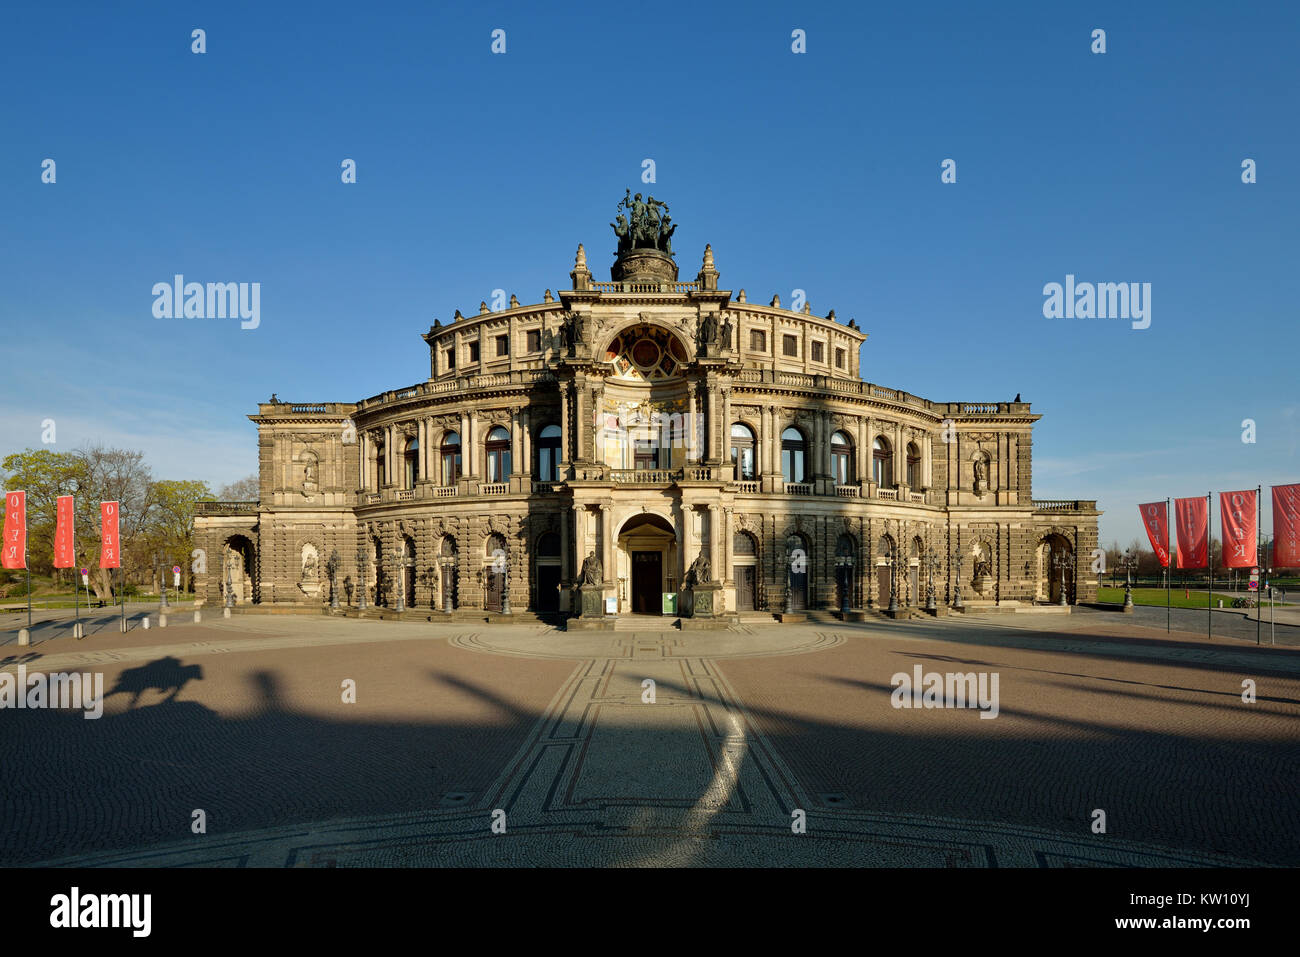 A Dresda, la piazza del teatro con la Semperoper, Theaterplatz mit Semperoper Foto Stock